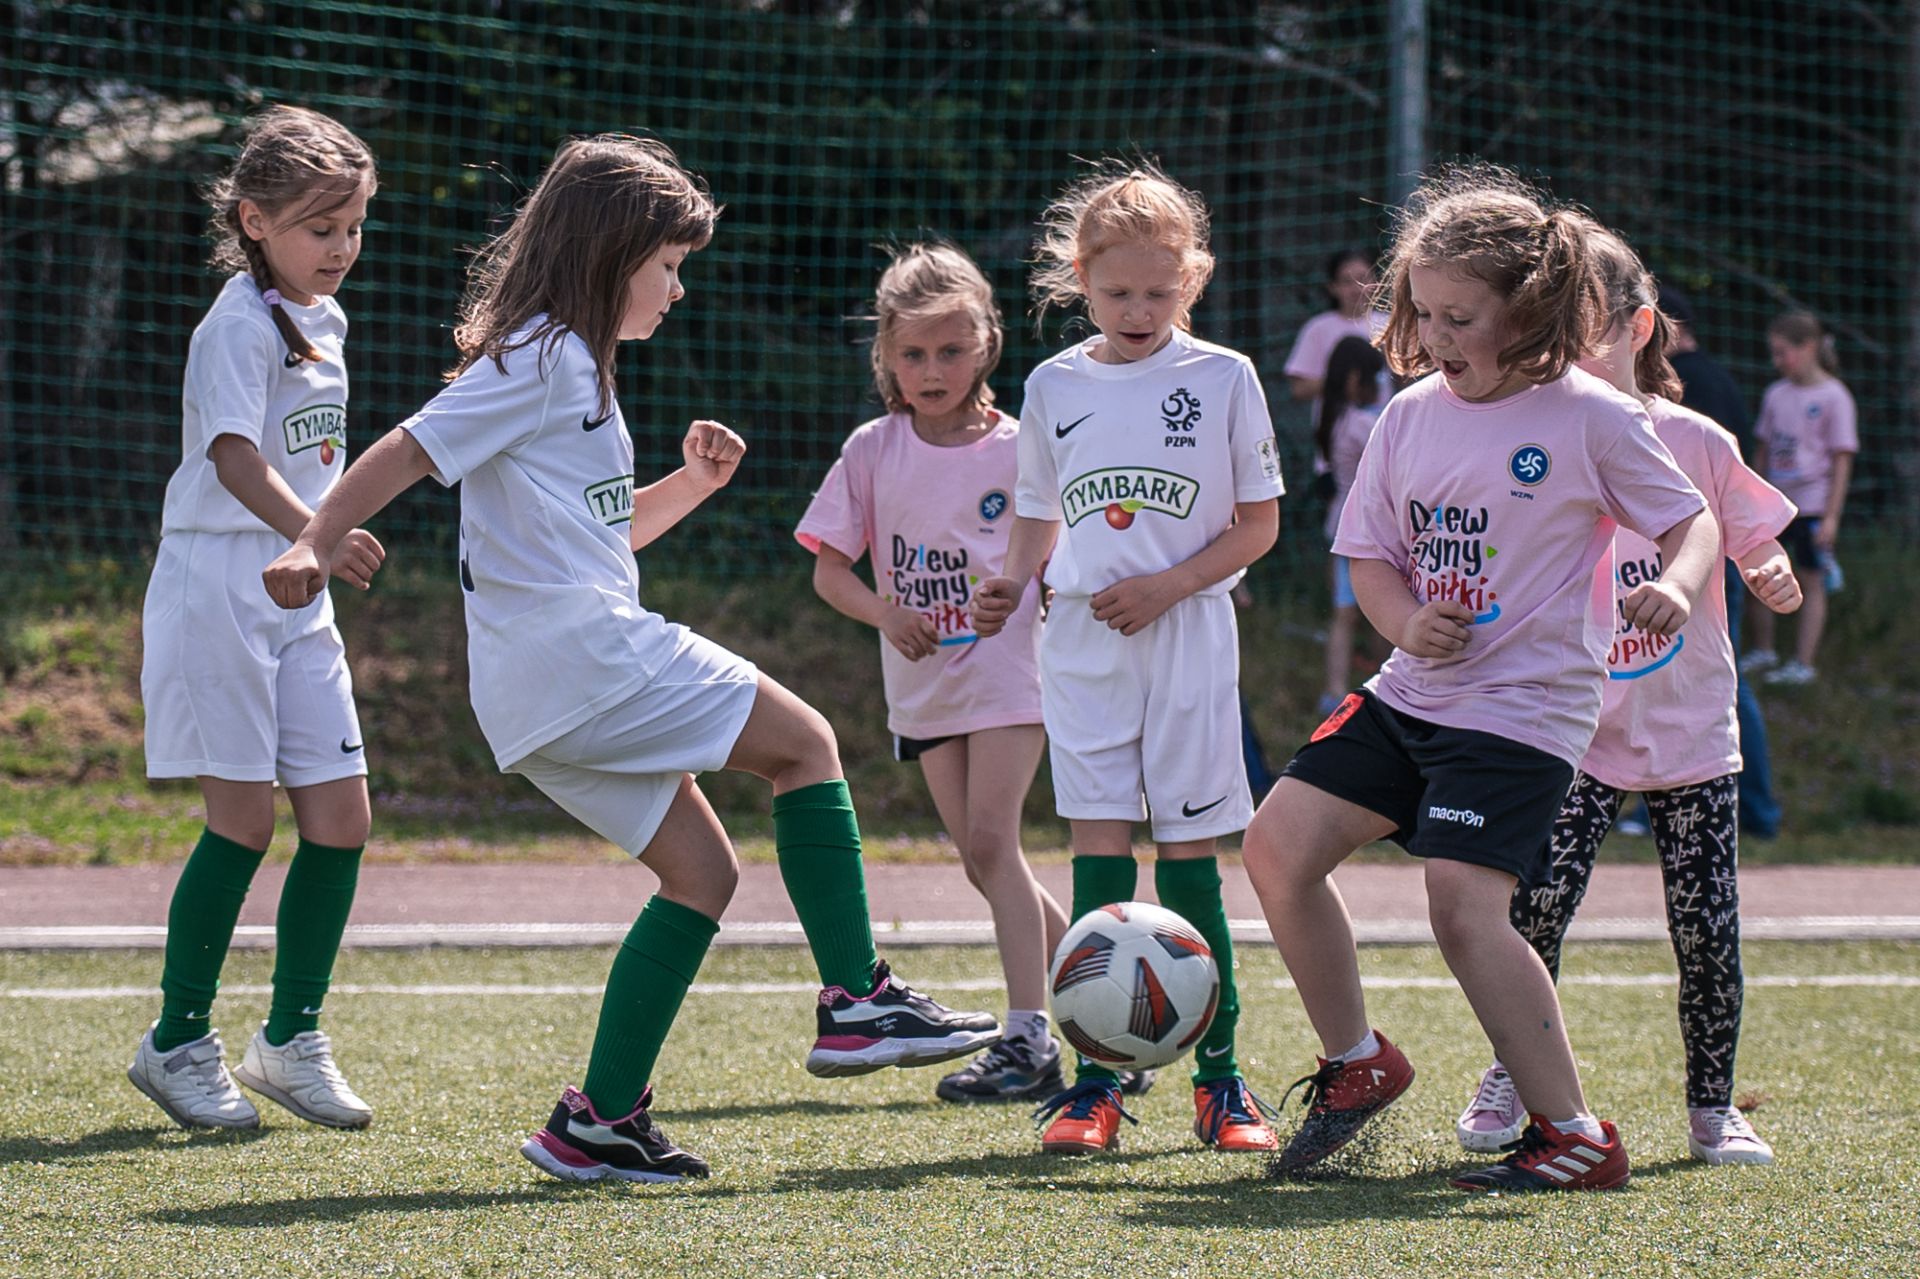 Dziewczyny do Piłki - Założenia Projektu